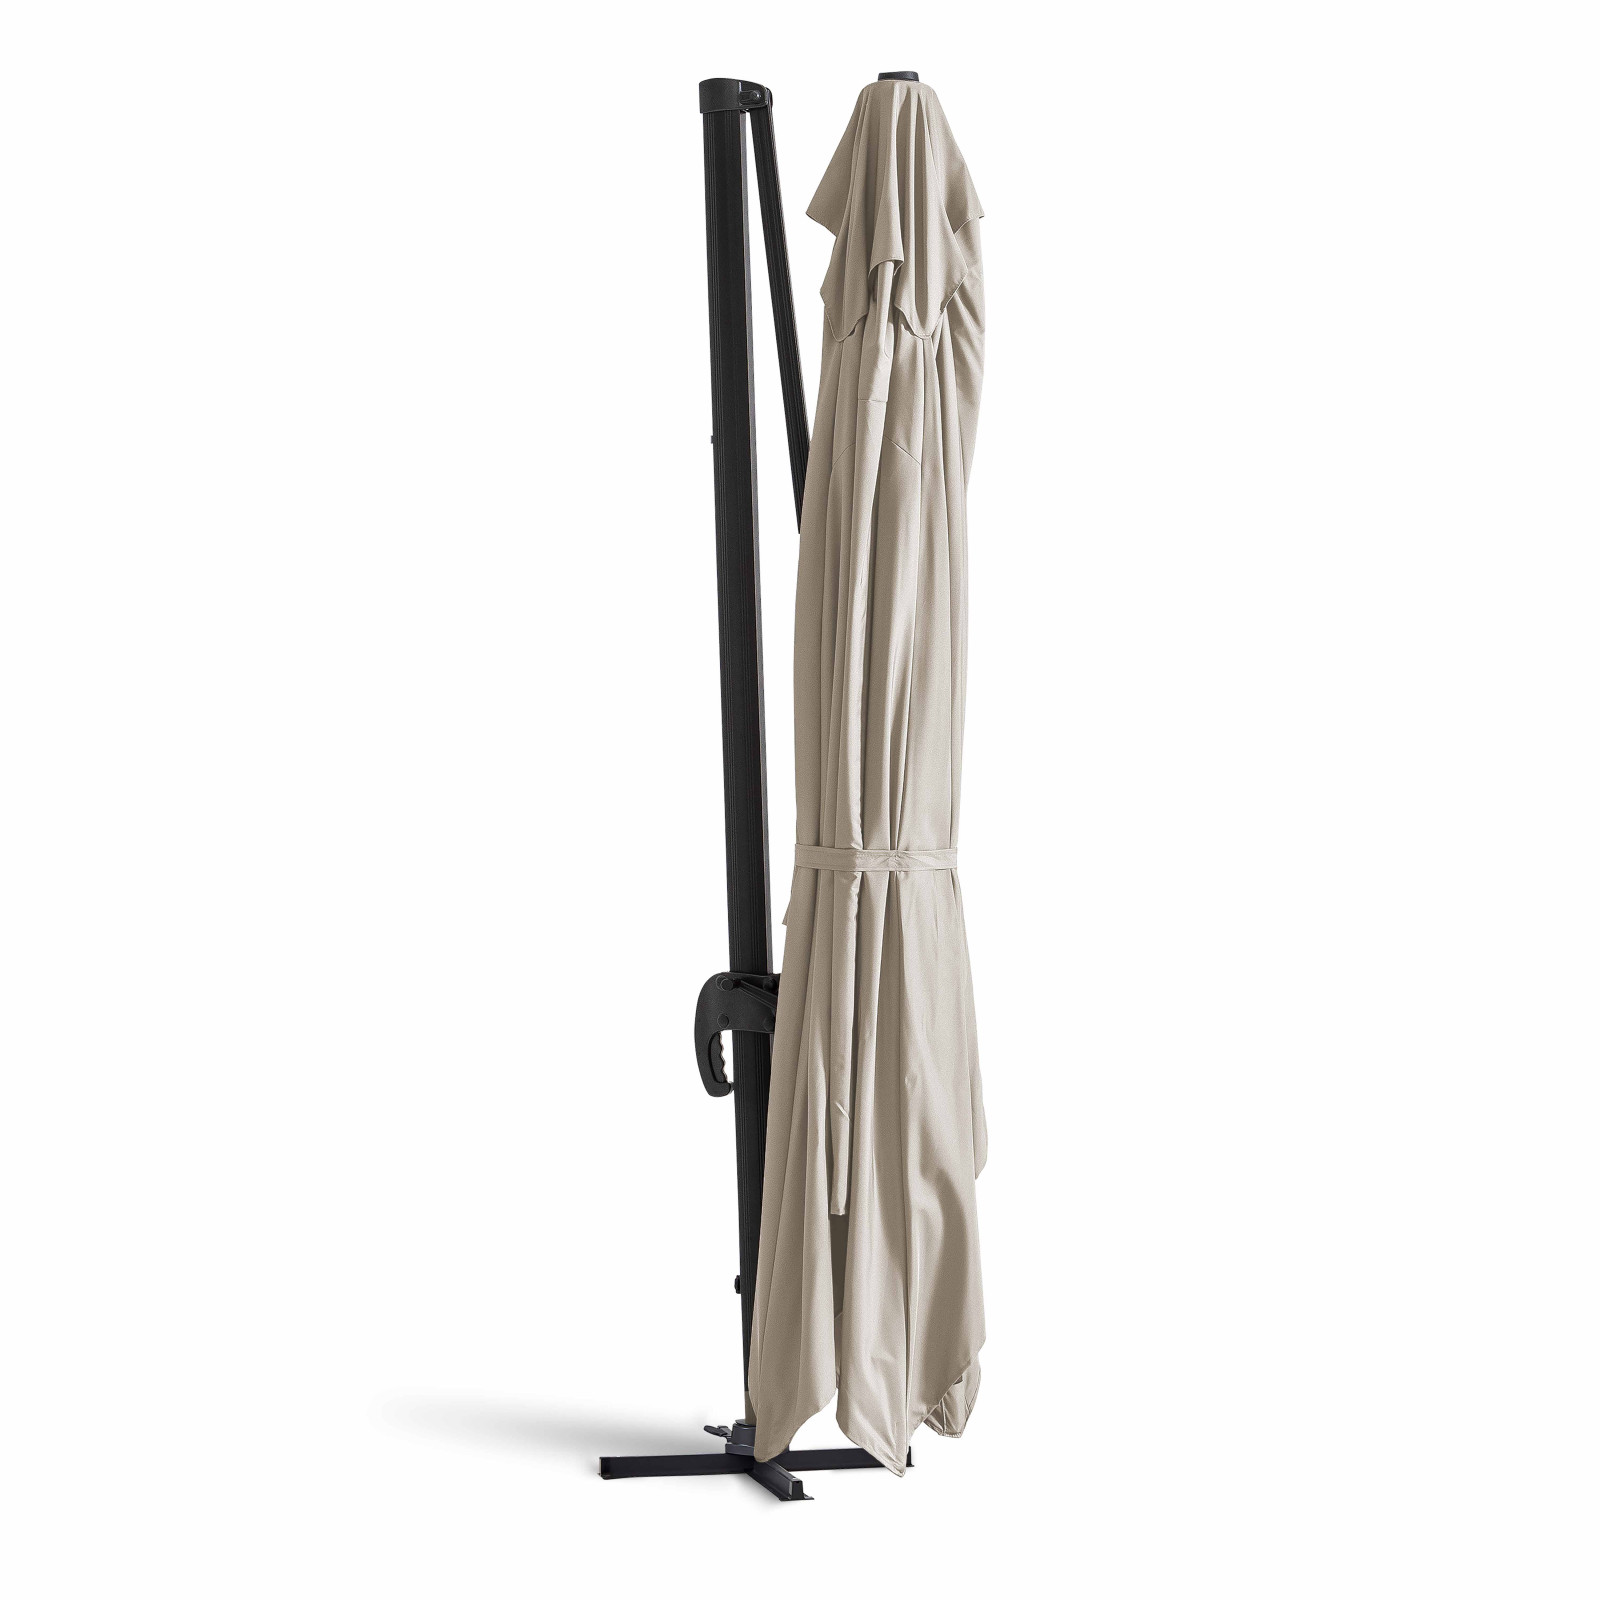 Parasol déporté rectangulaire Éléa avec toile Sunbrella® Hespéride 4 x 3 m